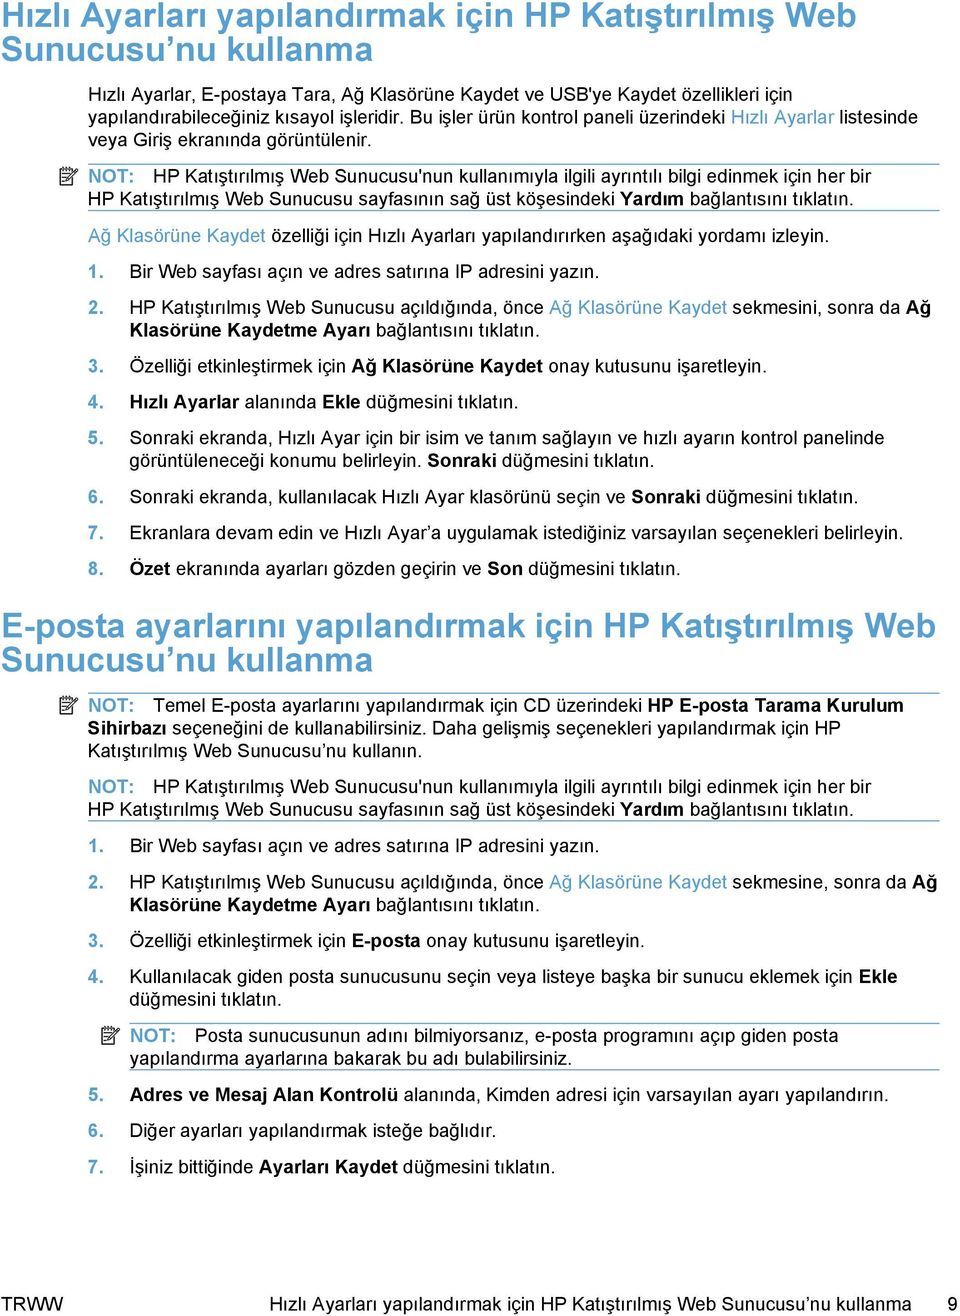 NOT: HP Katıştırılmış Web Sunucusu'nun kullanımıyla ilgili ayrıntılı bilgi edinmek için her bir HP Katıştırılmış Web Sunucusu sayfasının sağ üst köşesindeki Yardım bağlantısını tıklatın.